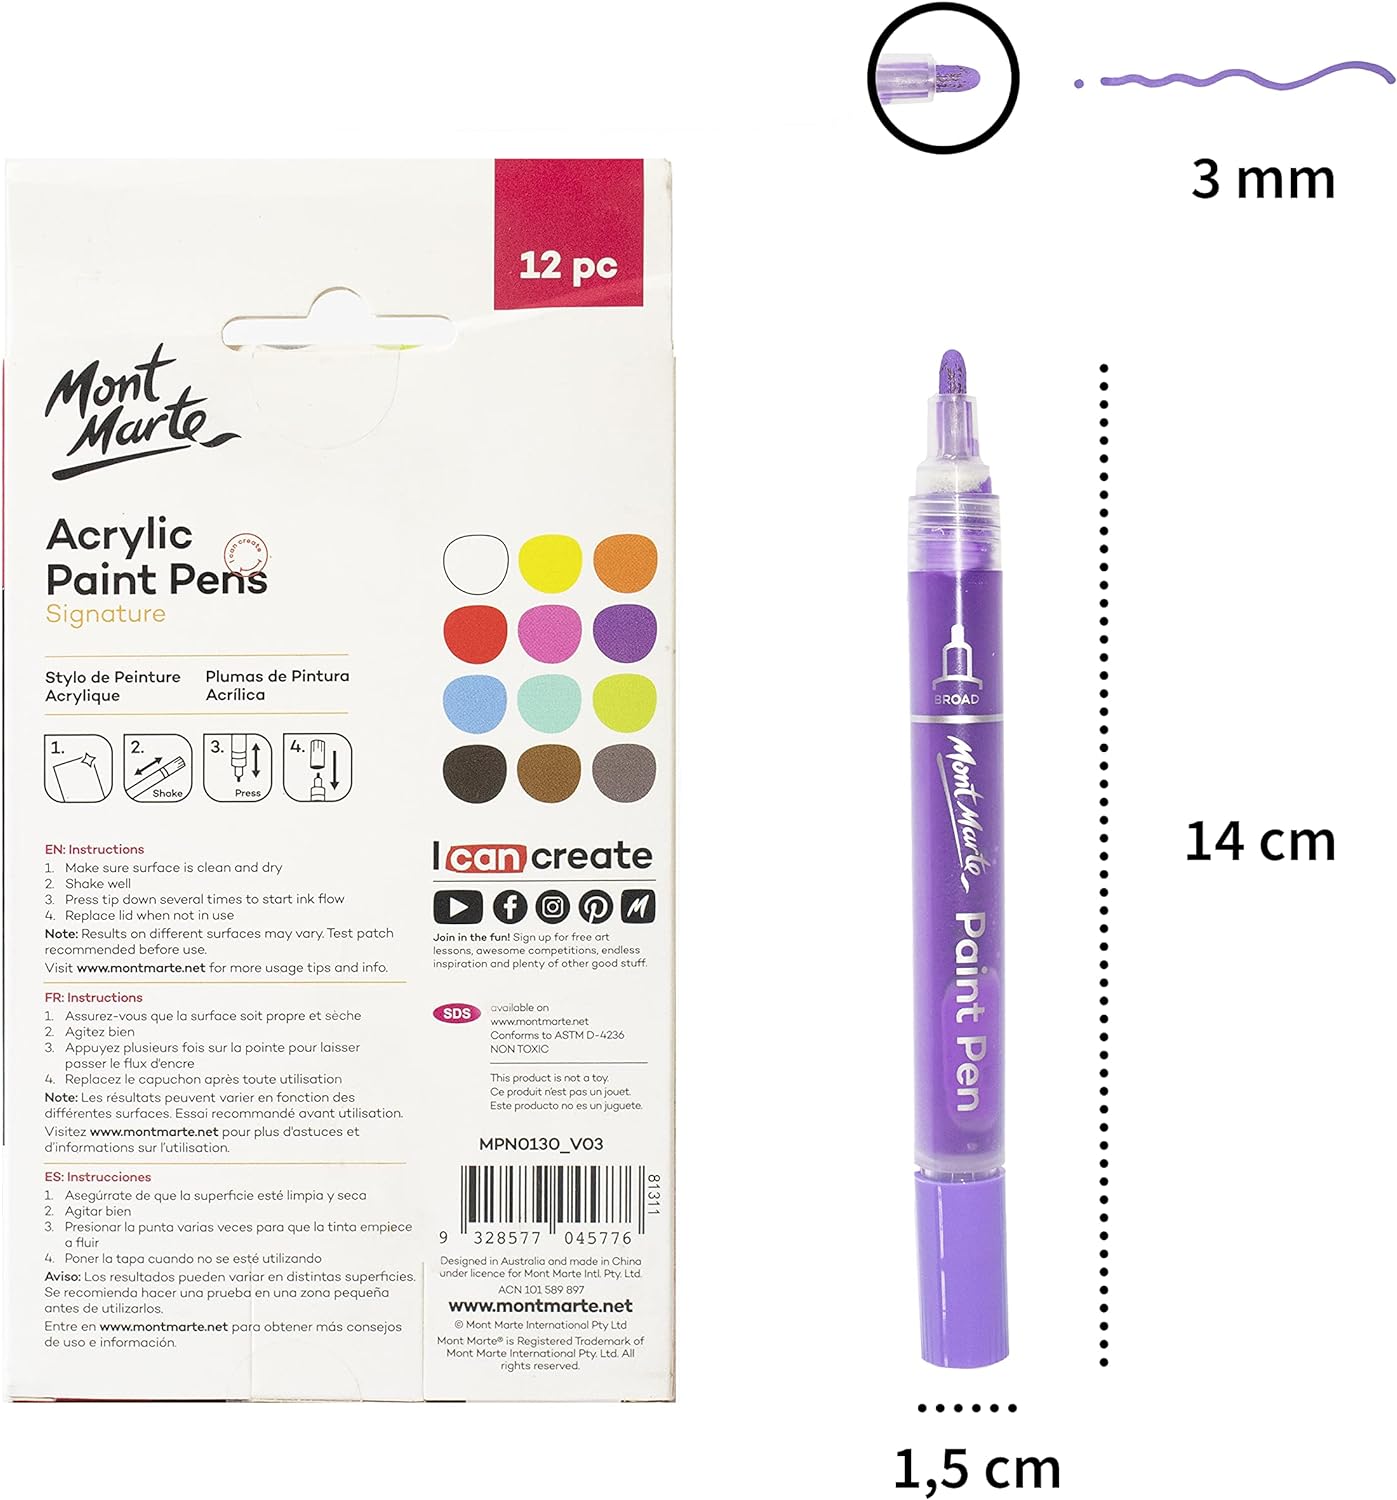 Mont Marte Signature Acrylic Paint Pens,12 Piece,Round Tip (3mm)